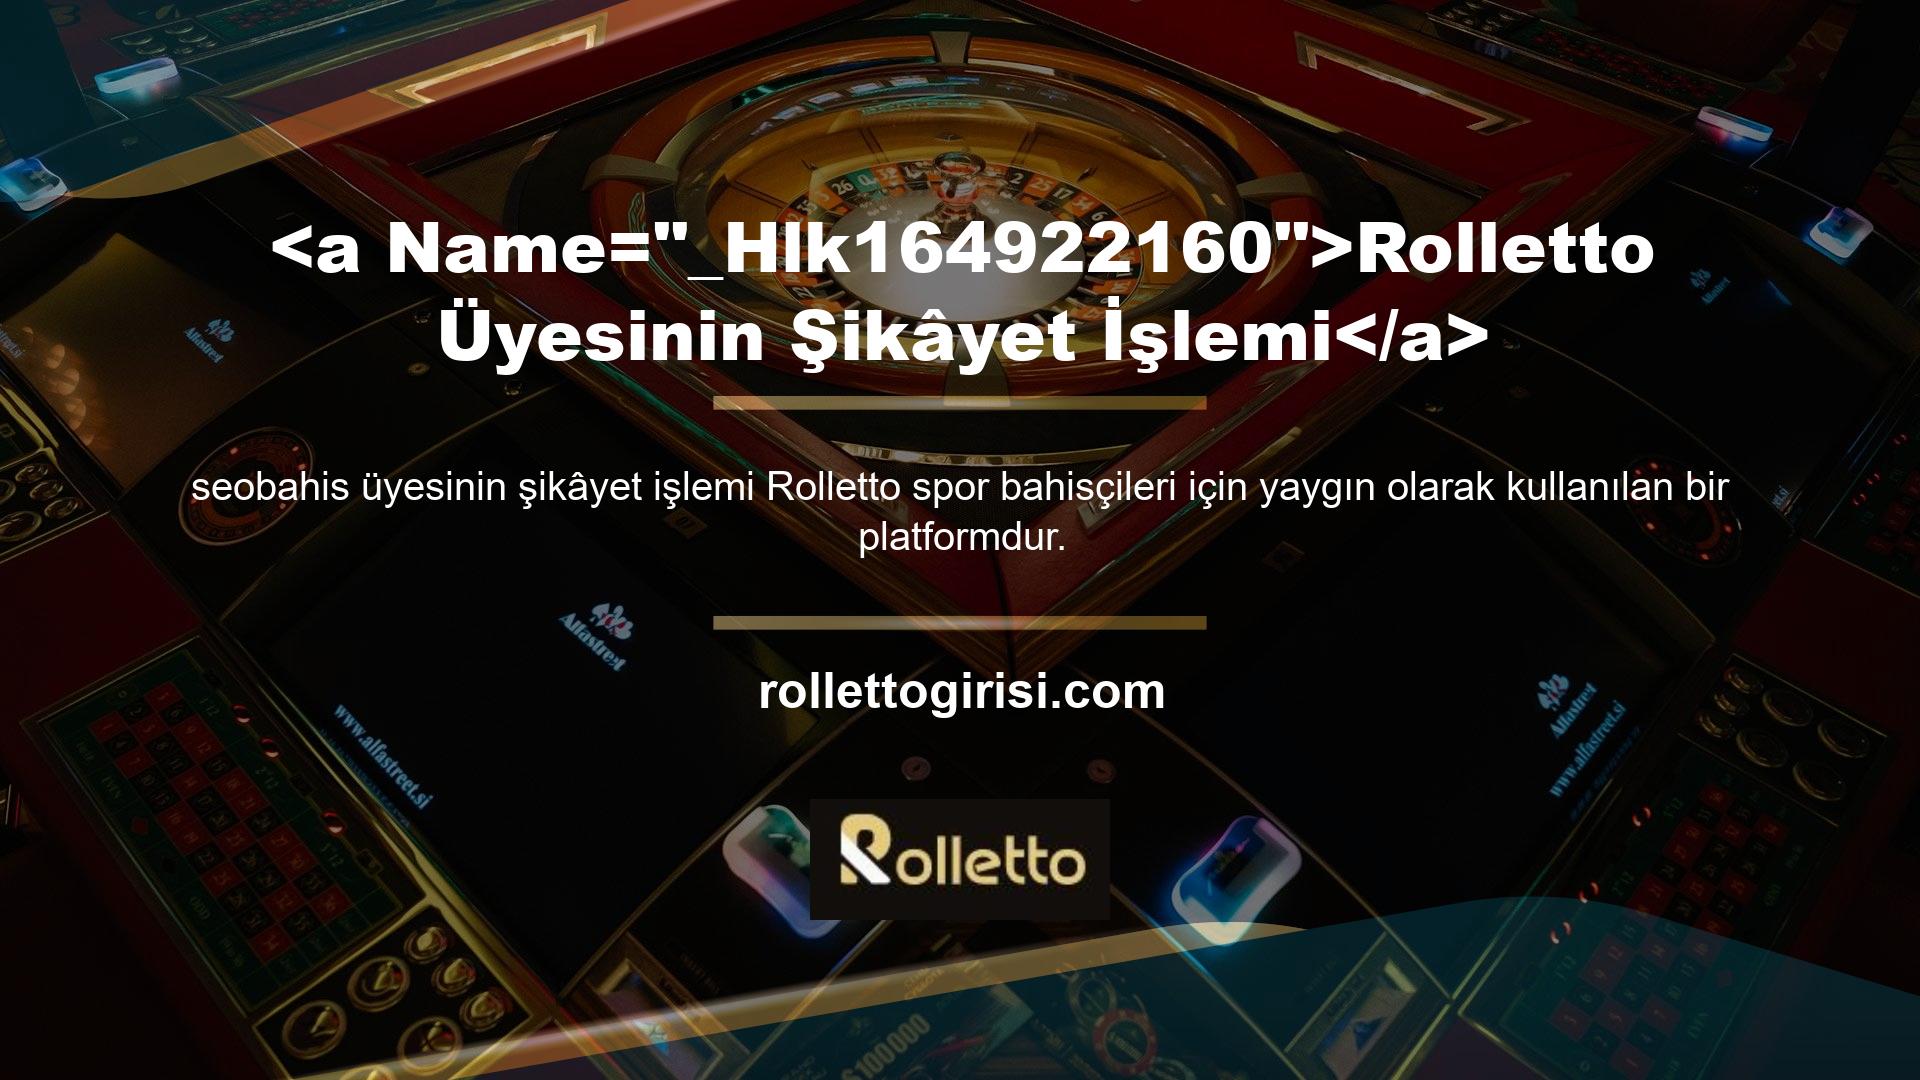 Rolletto Para Çekme Limitleri sitesi kullanıcılarına kapsamlı yardım sunmaktadır